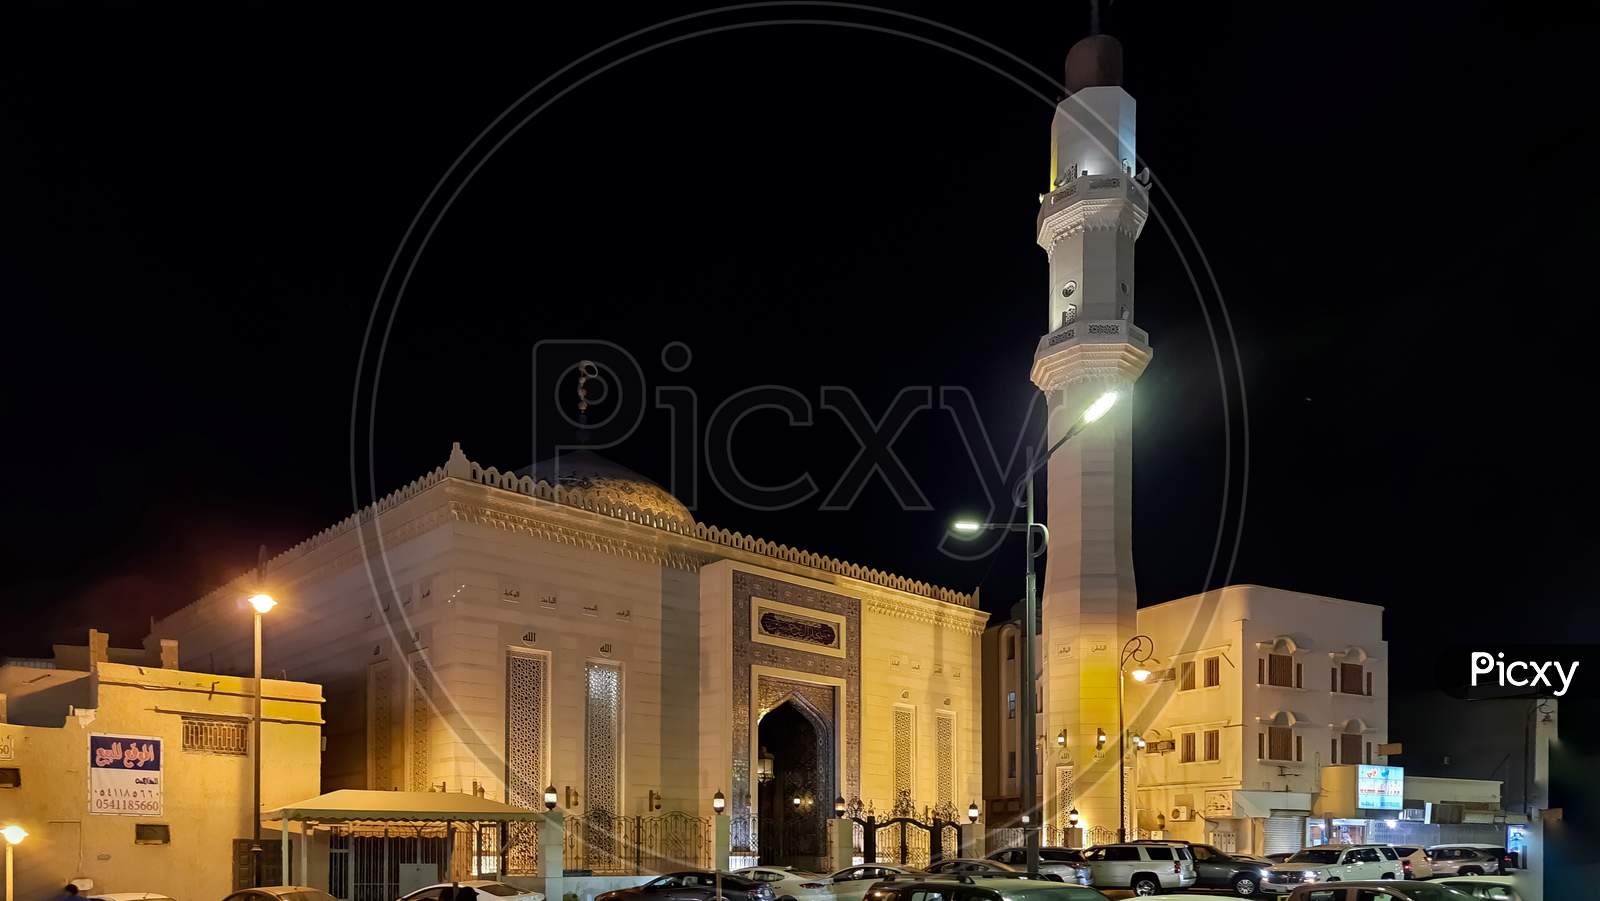 Beautiful mosque in night photo shoot.